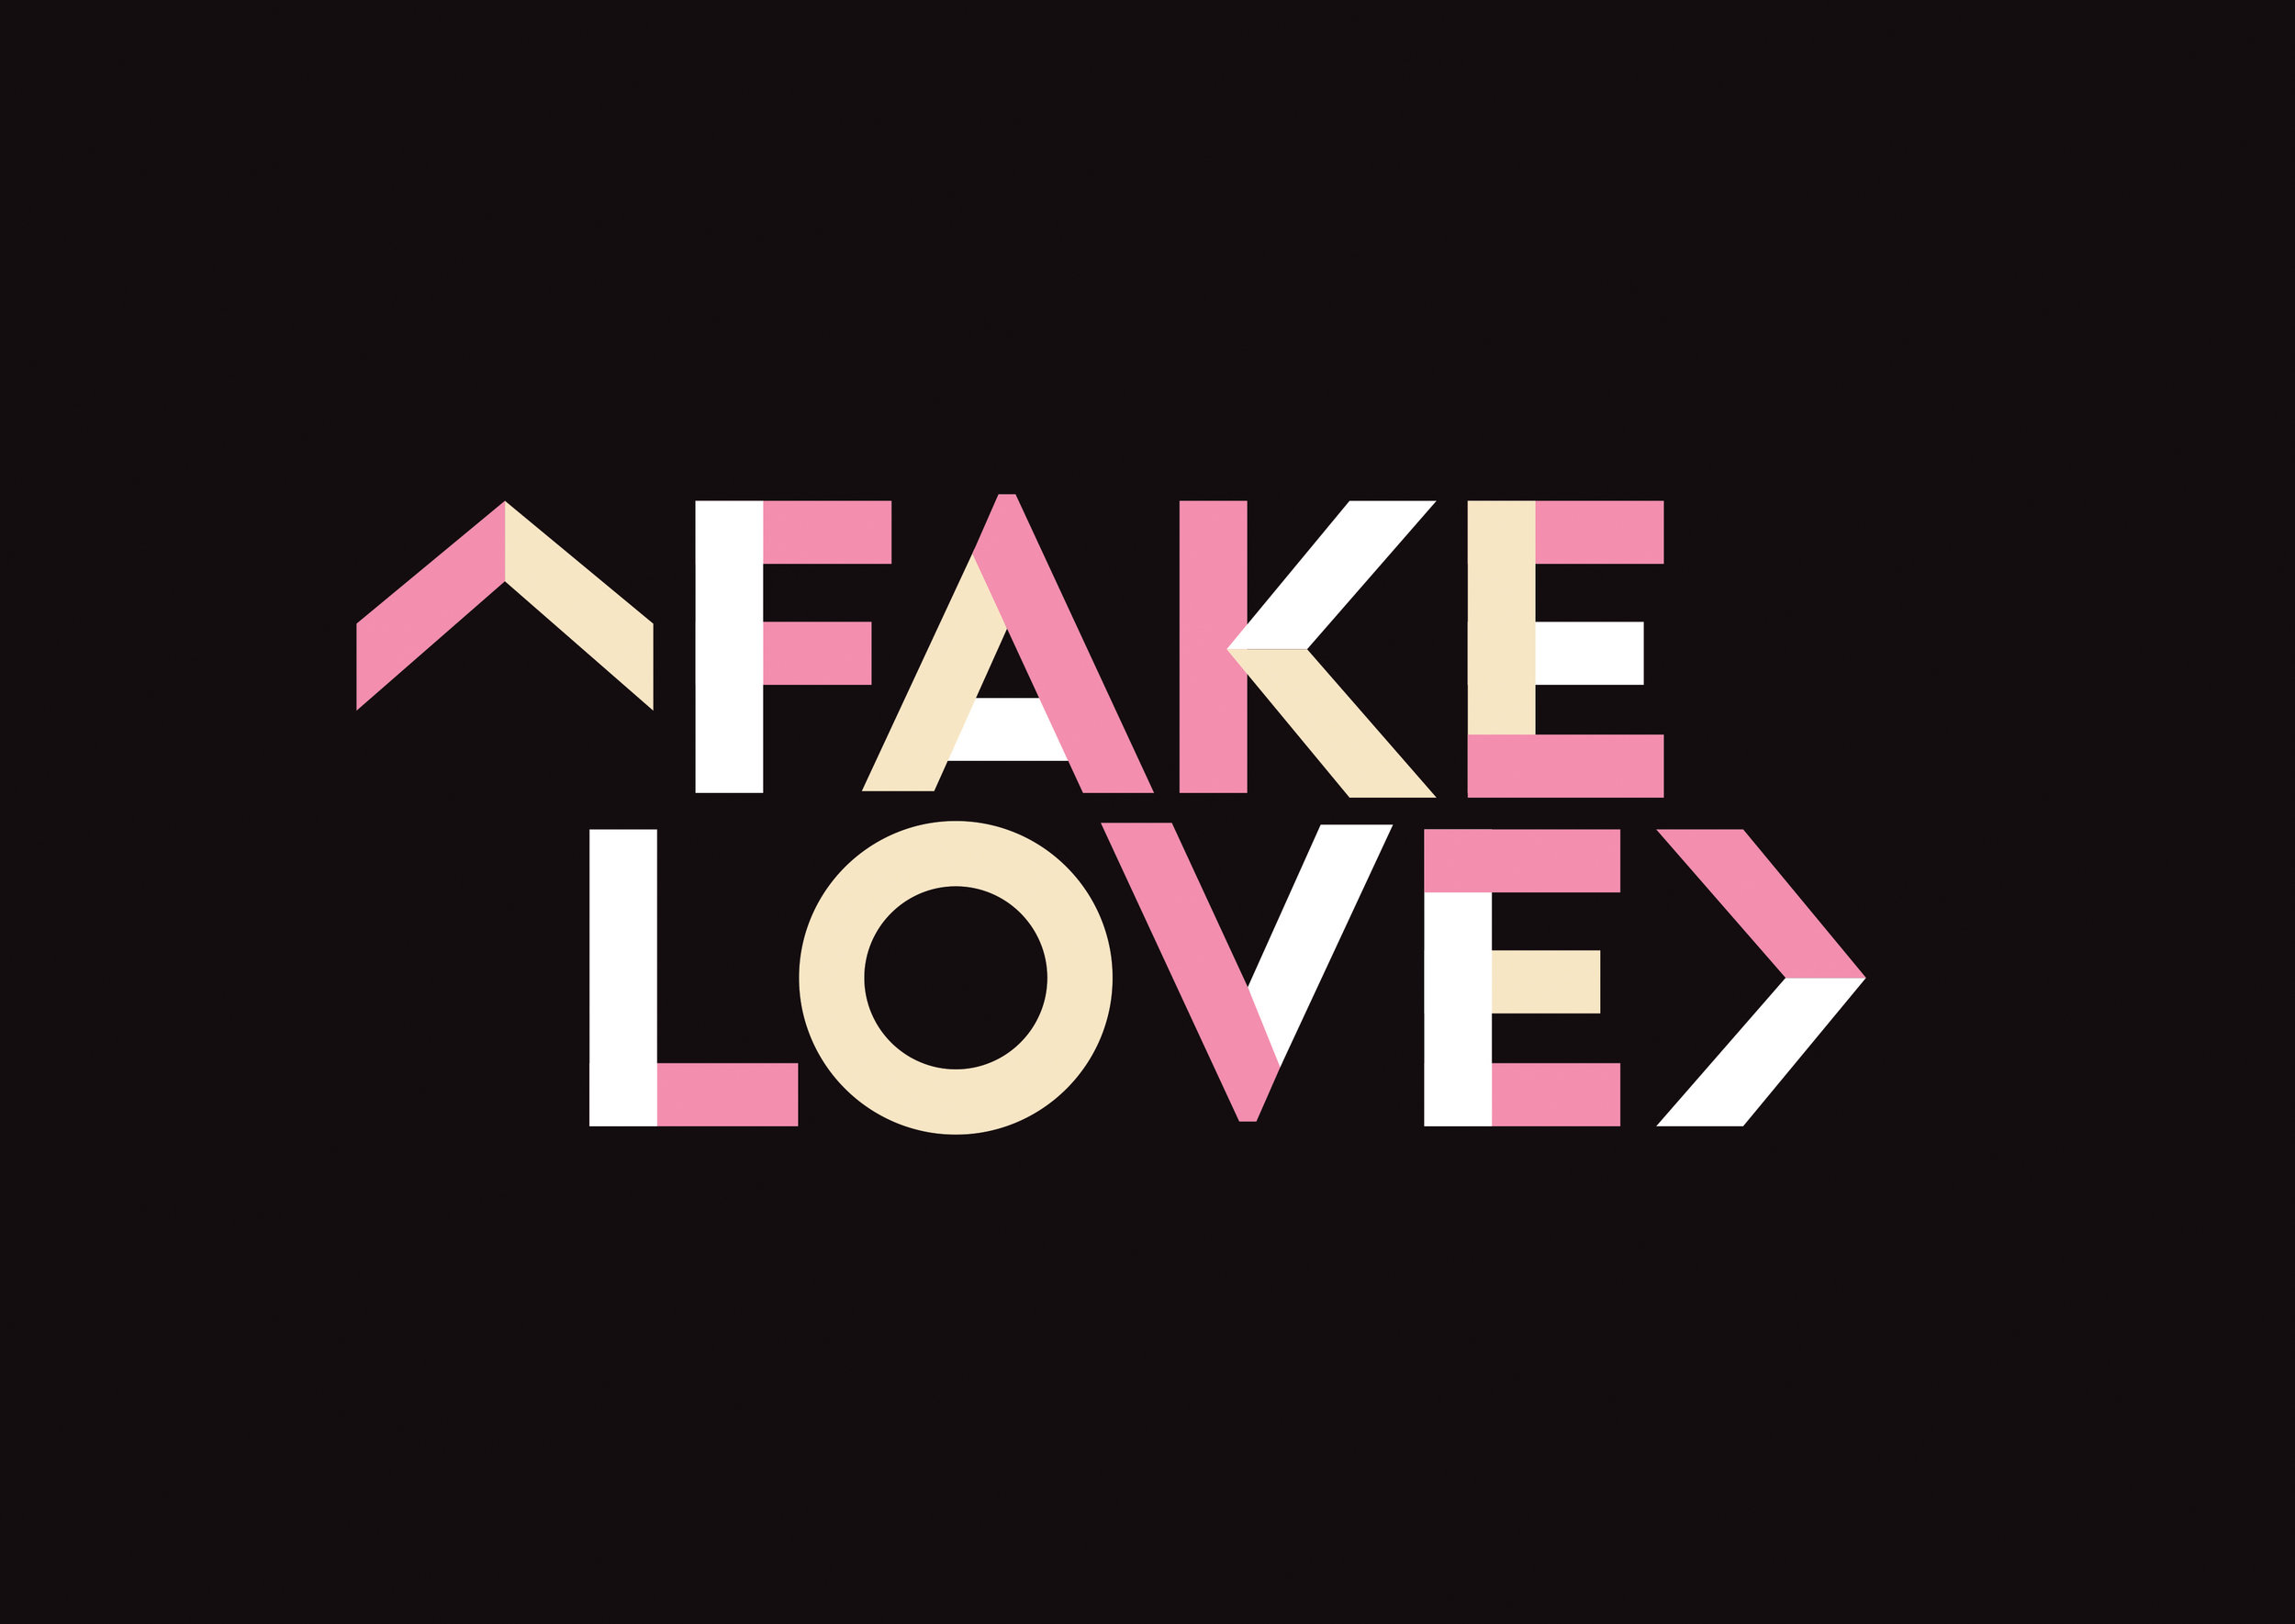 I love fake. Fake Love. Fake Love логотип. БТС fake Love надпись. Fake Love картинки.